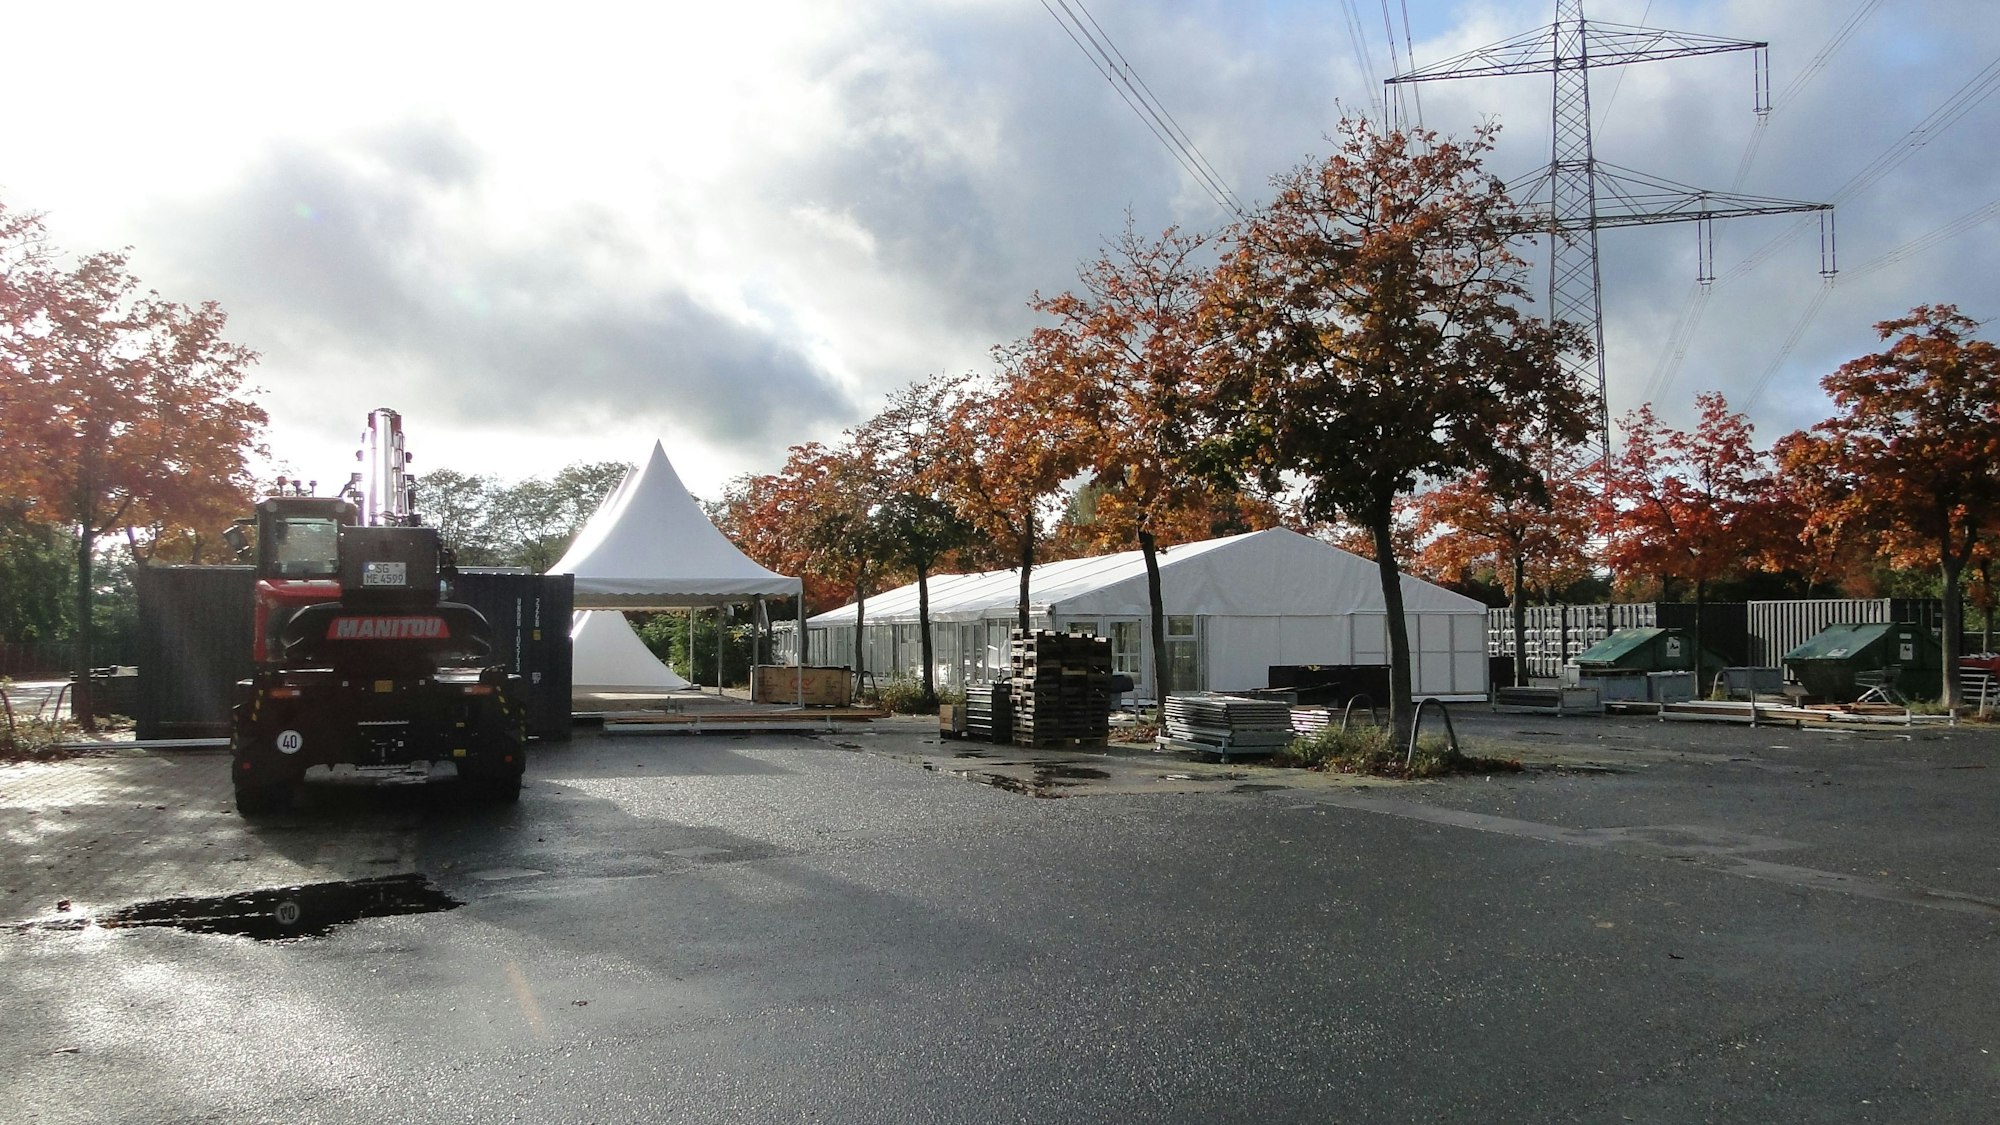 Auf einem Parkplatz mit Bäumen sind große weiße Zelte aufgebaut.